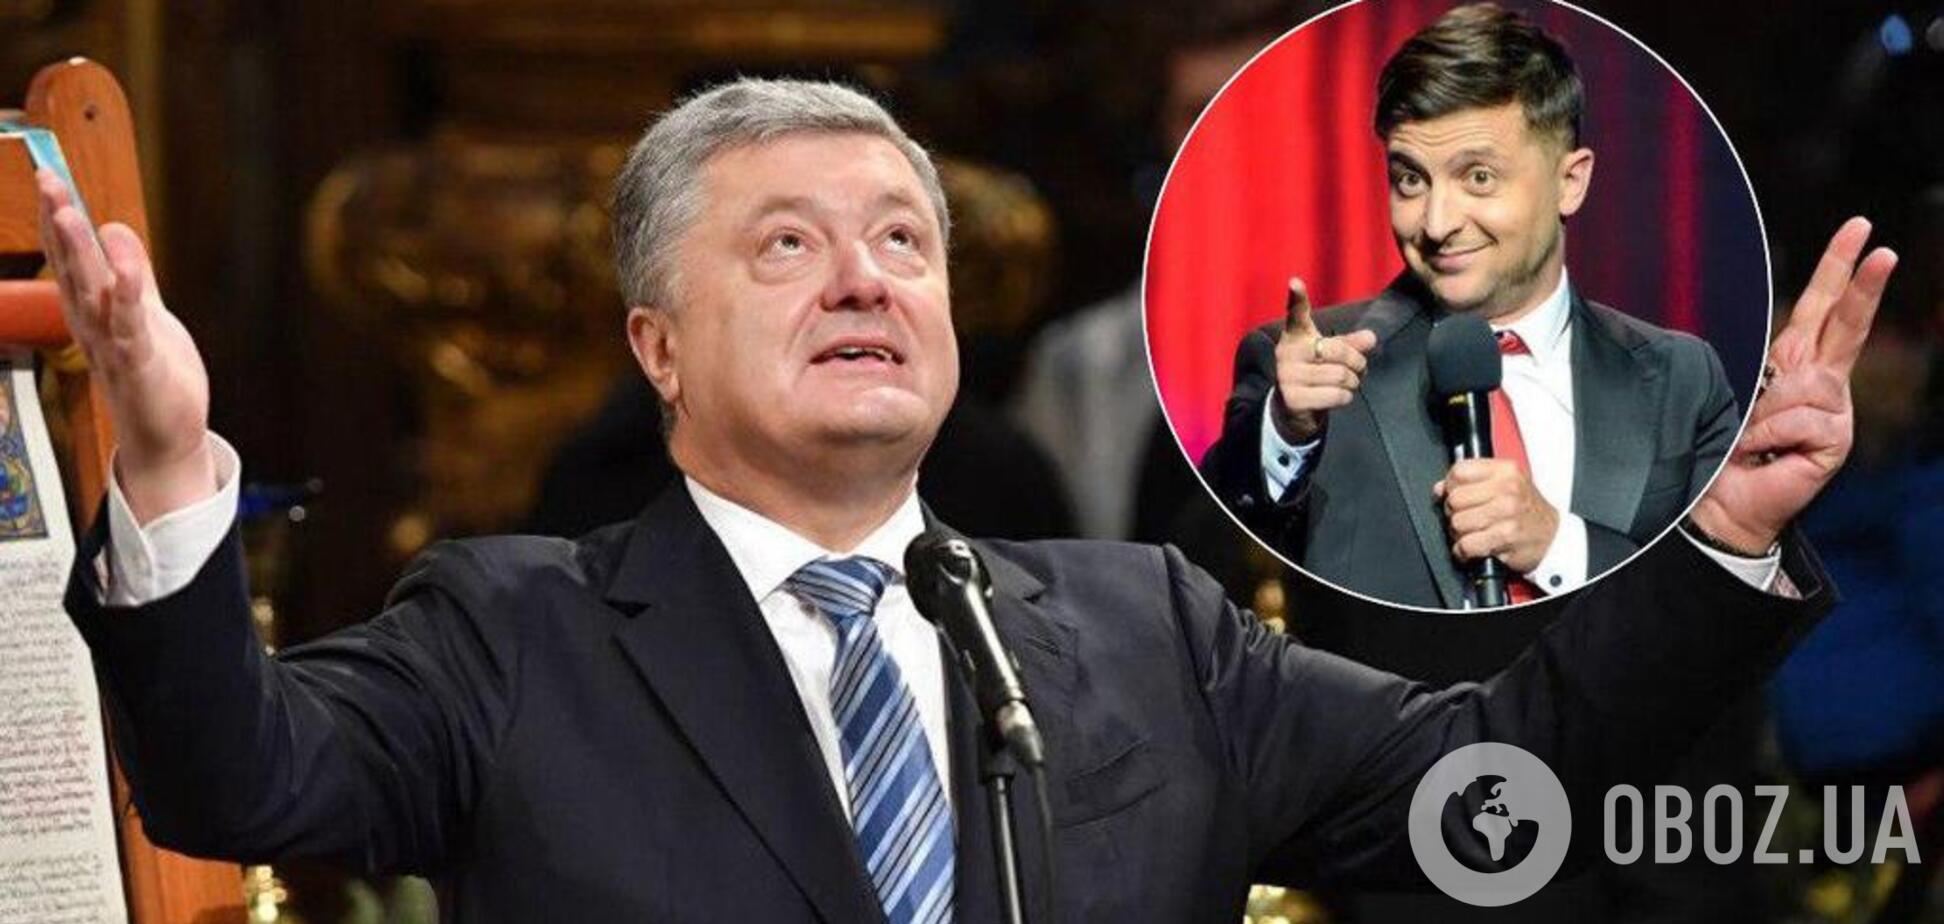 Зеленський vs Порошенко: соціолог назвав переможця другого туру